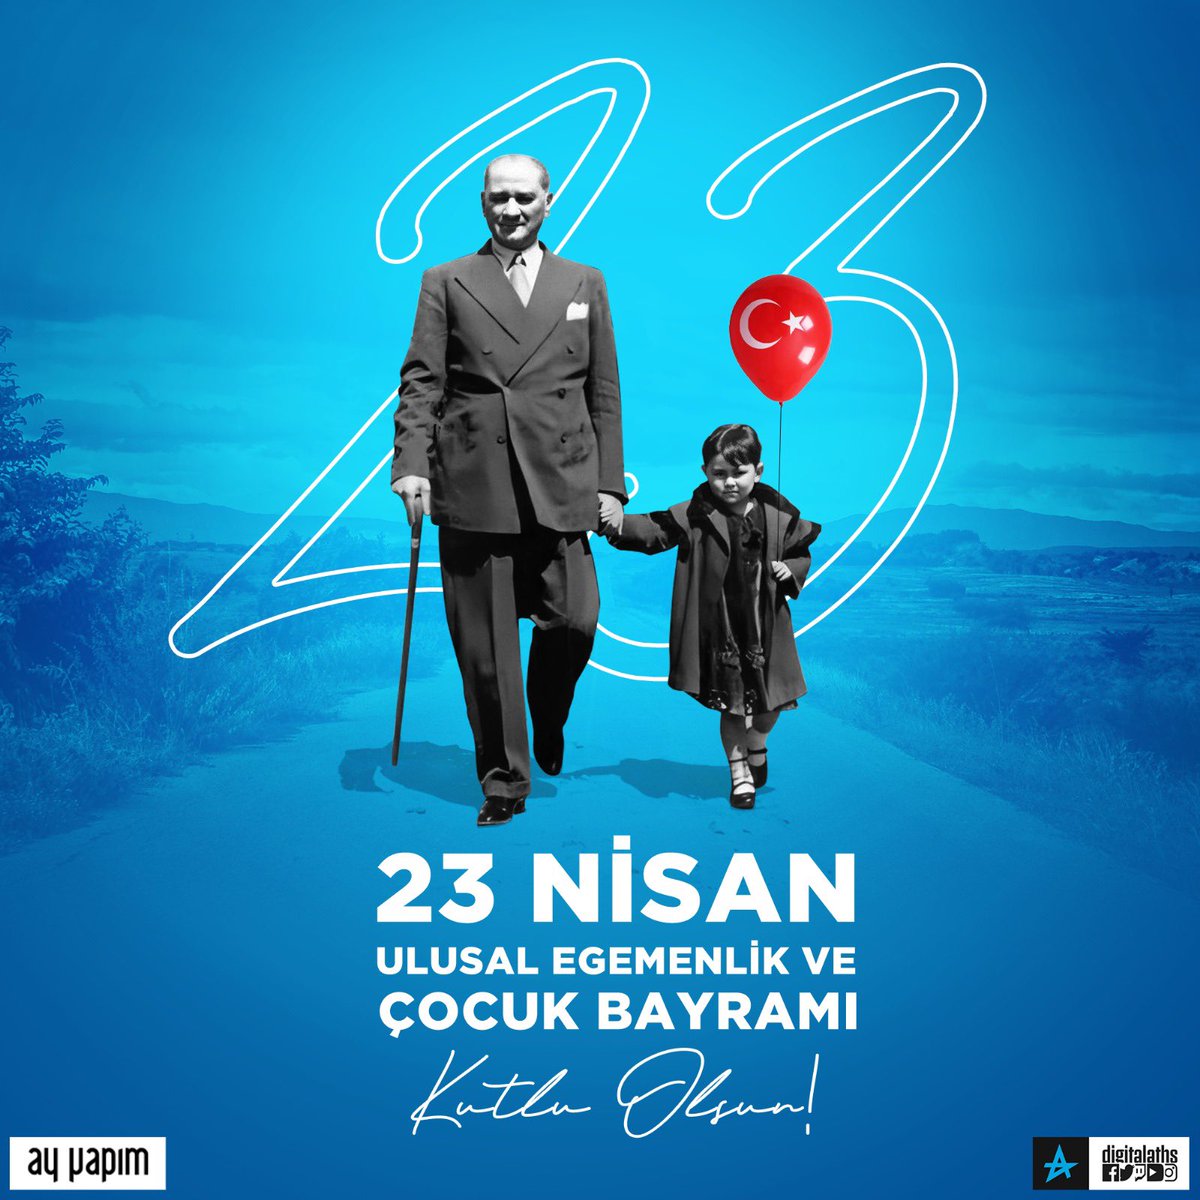 23 Nisan Ulusal Egemenlik ve Çocuk Bayramımız Kutlu Olsun! 🇹🇷 #23Nisan